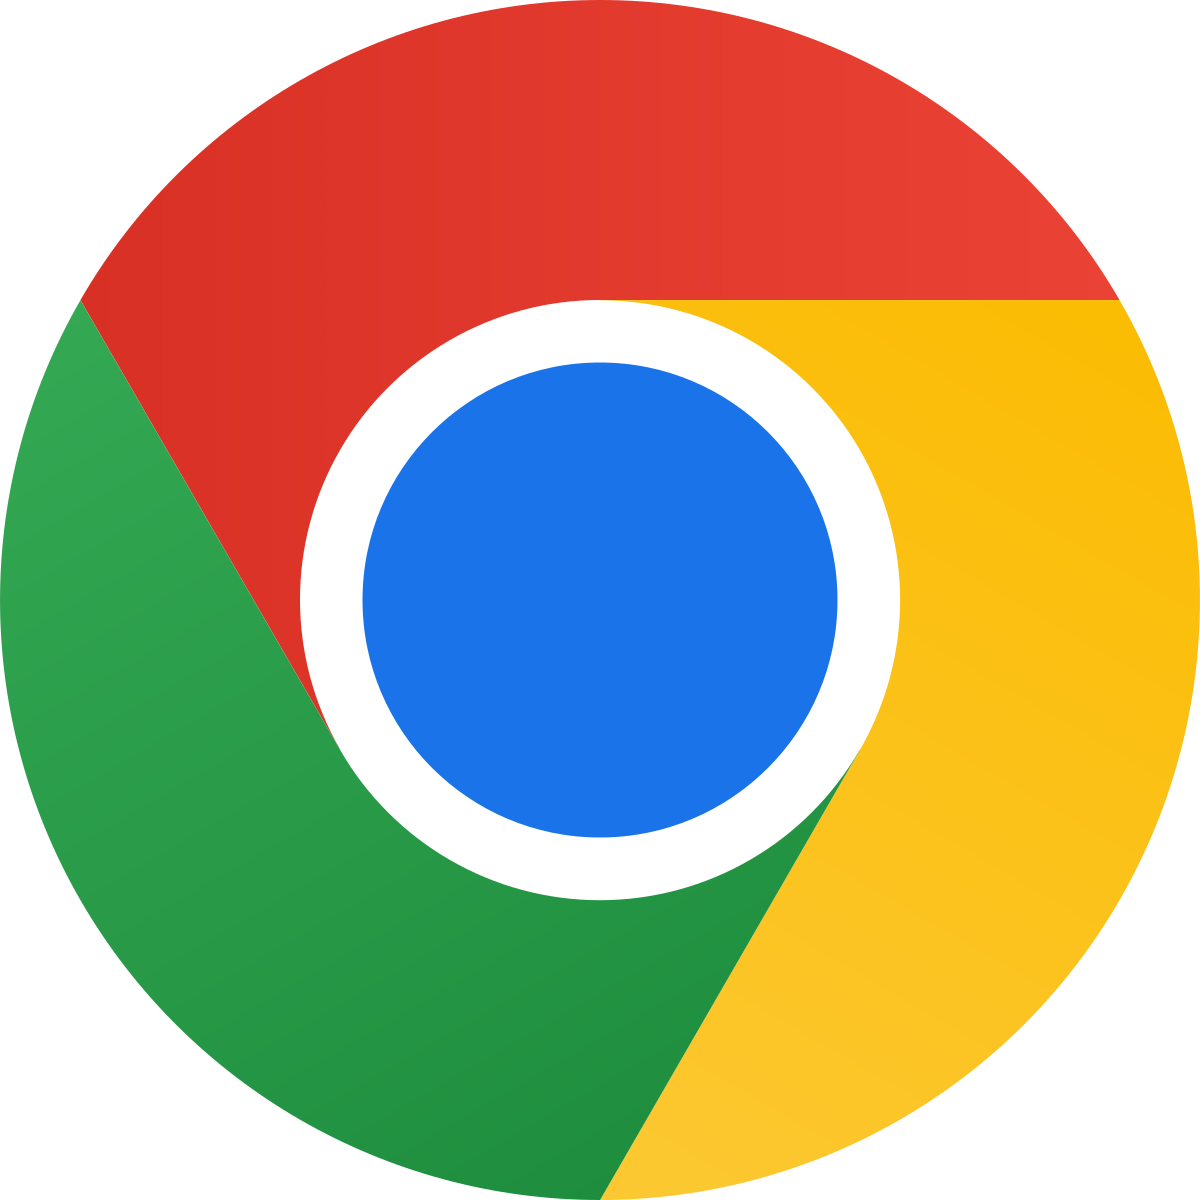 Έκτακτη ανακοίνωση για το Google Chrome - Τι πρέπει να κάνουμε όλοι